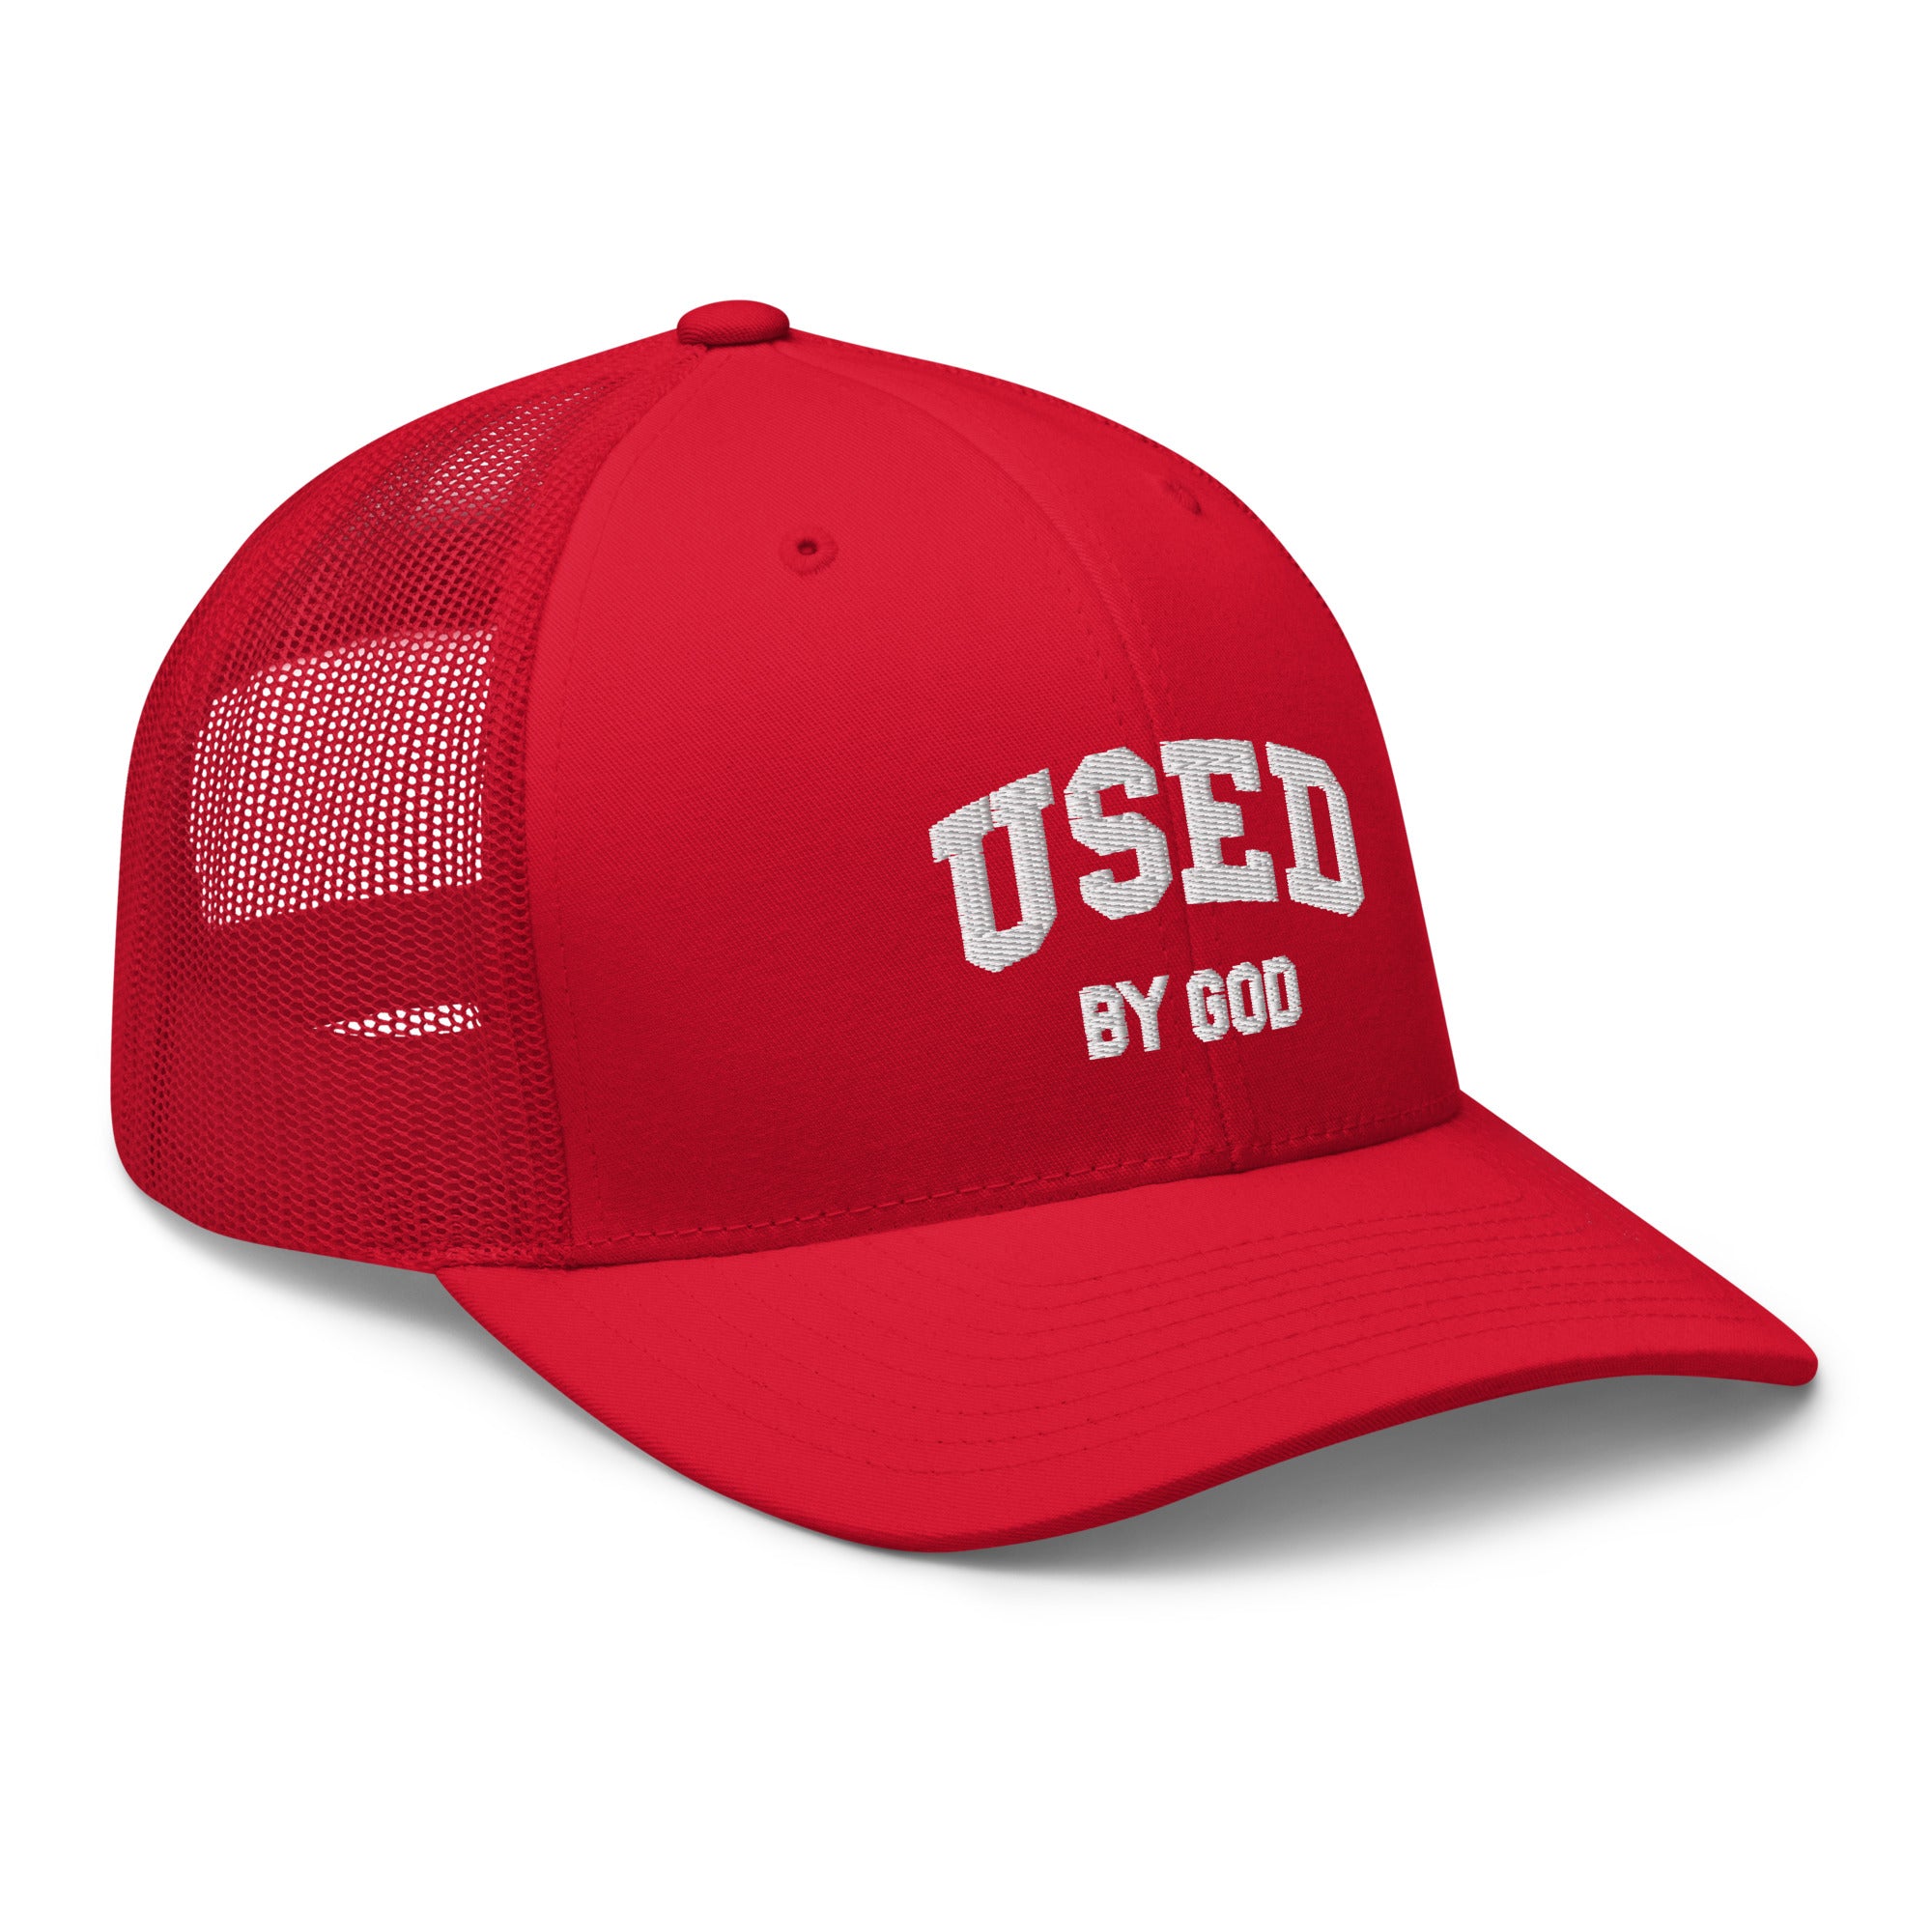 UBG Fire Trucker Cap